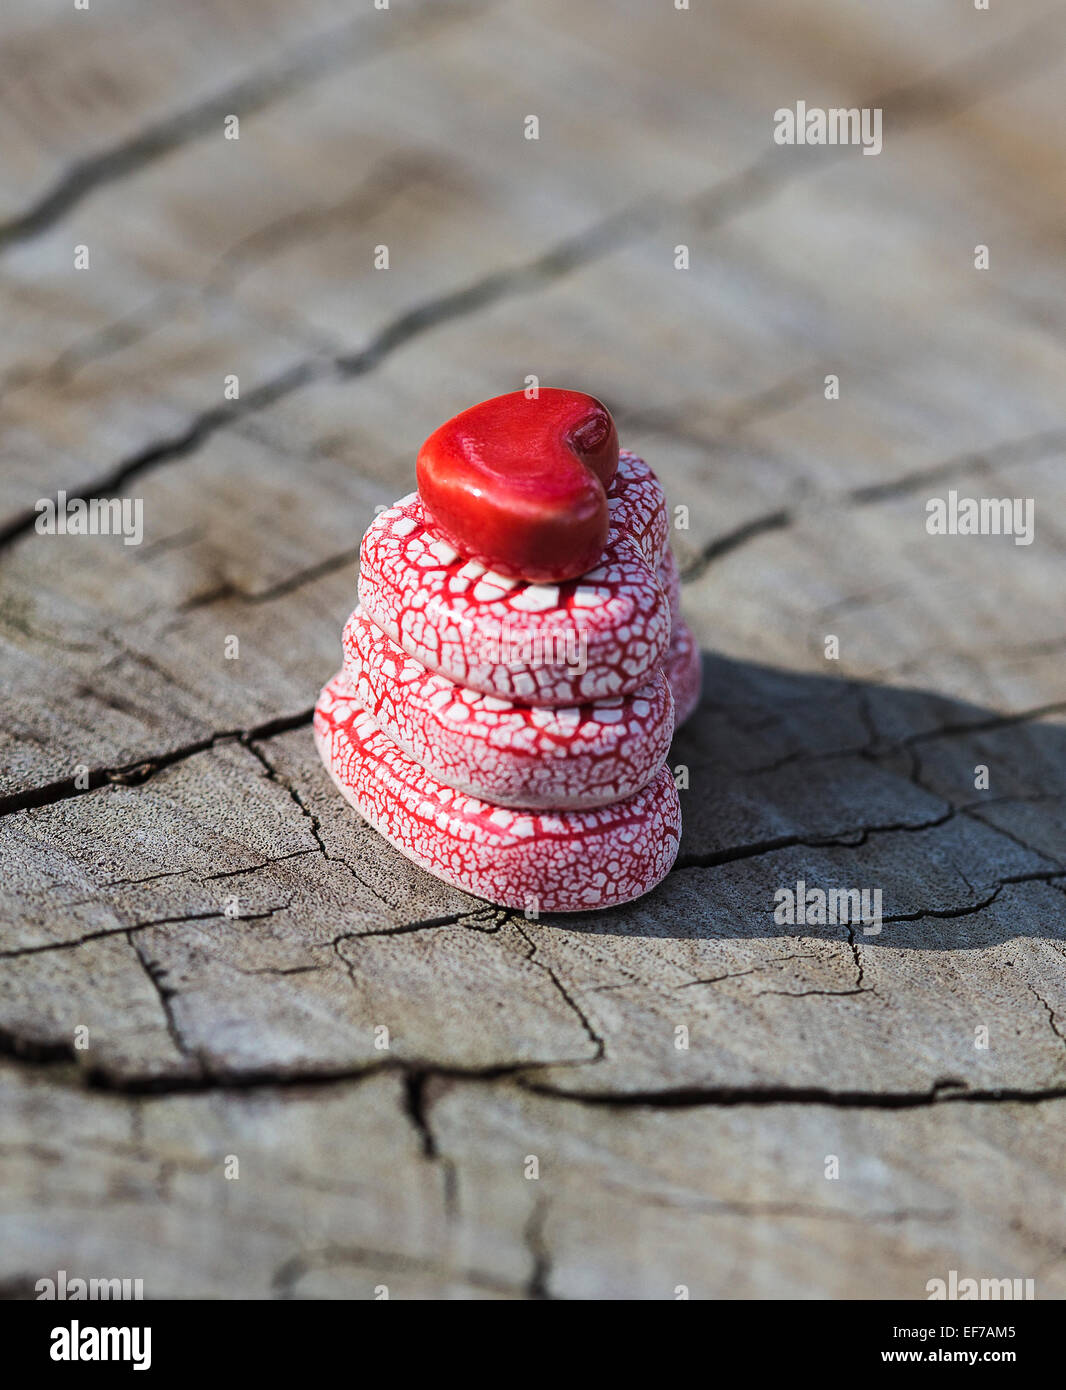 Un color rosa y corazones de cerámica roja pirámide está colocado sobre una superficie de madera plana. Foto de stock